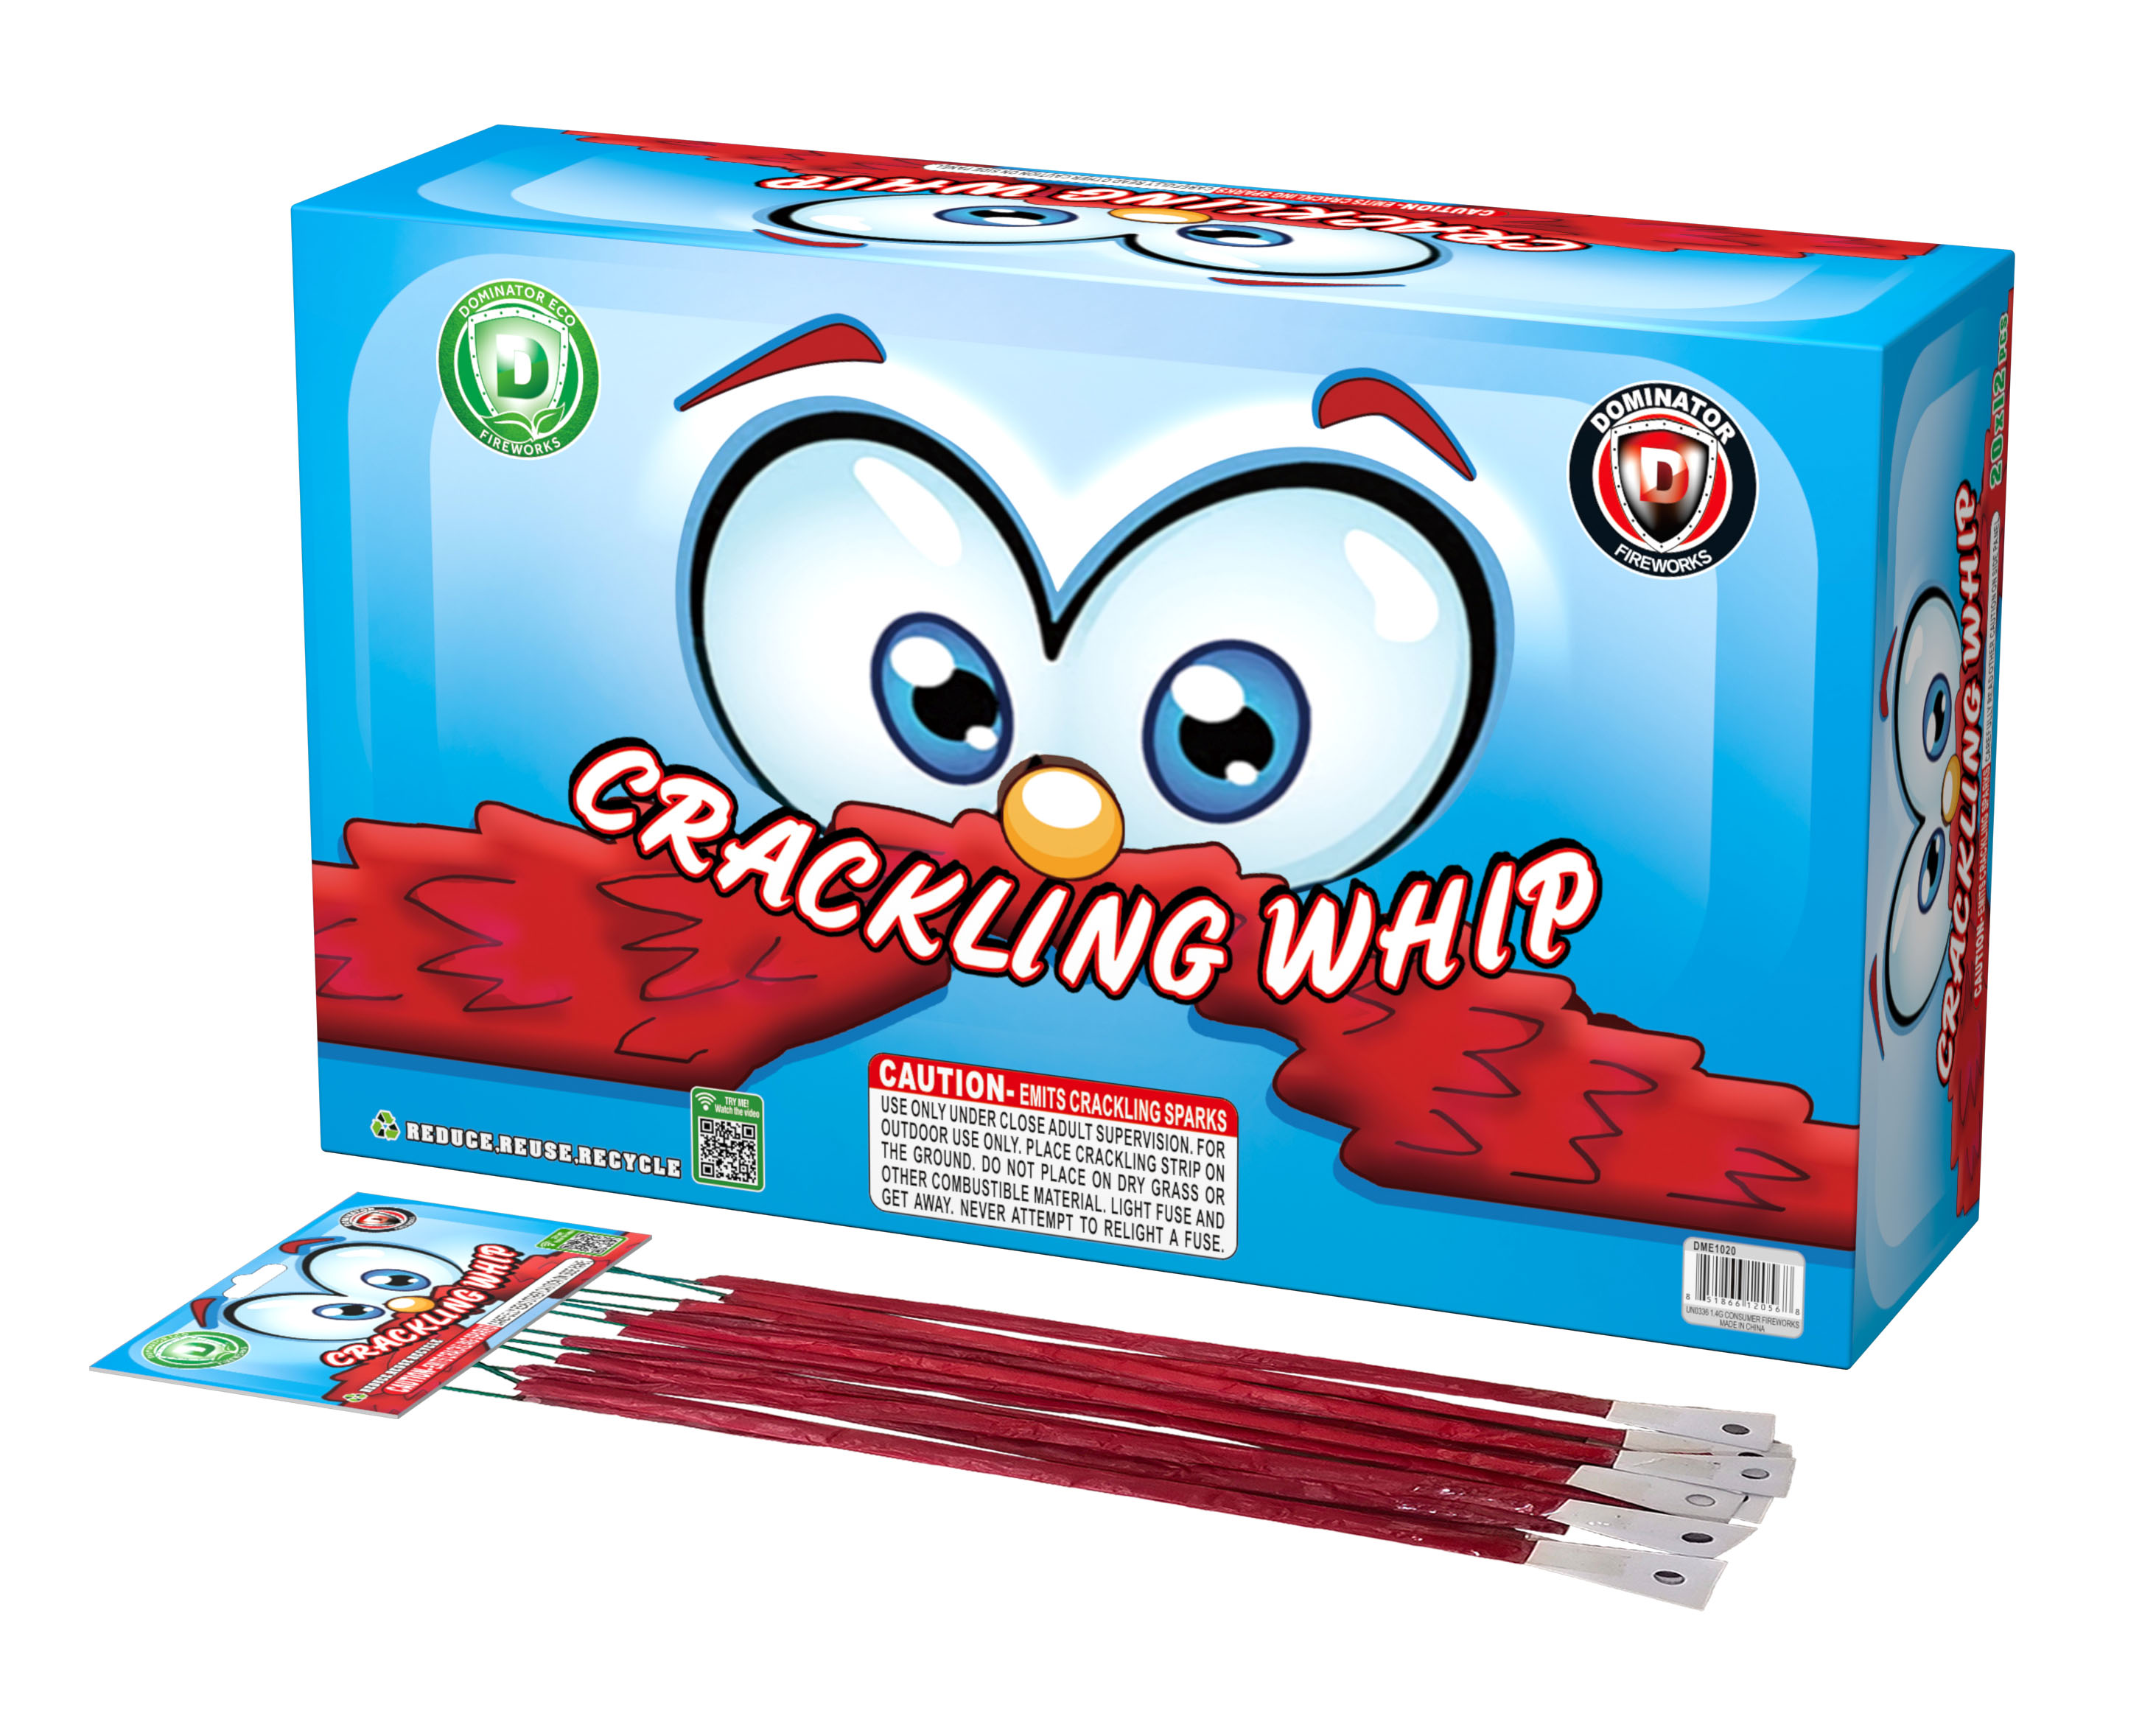 Crackling whip